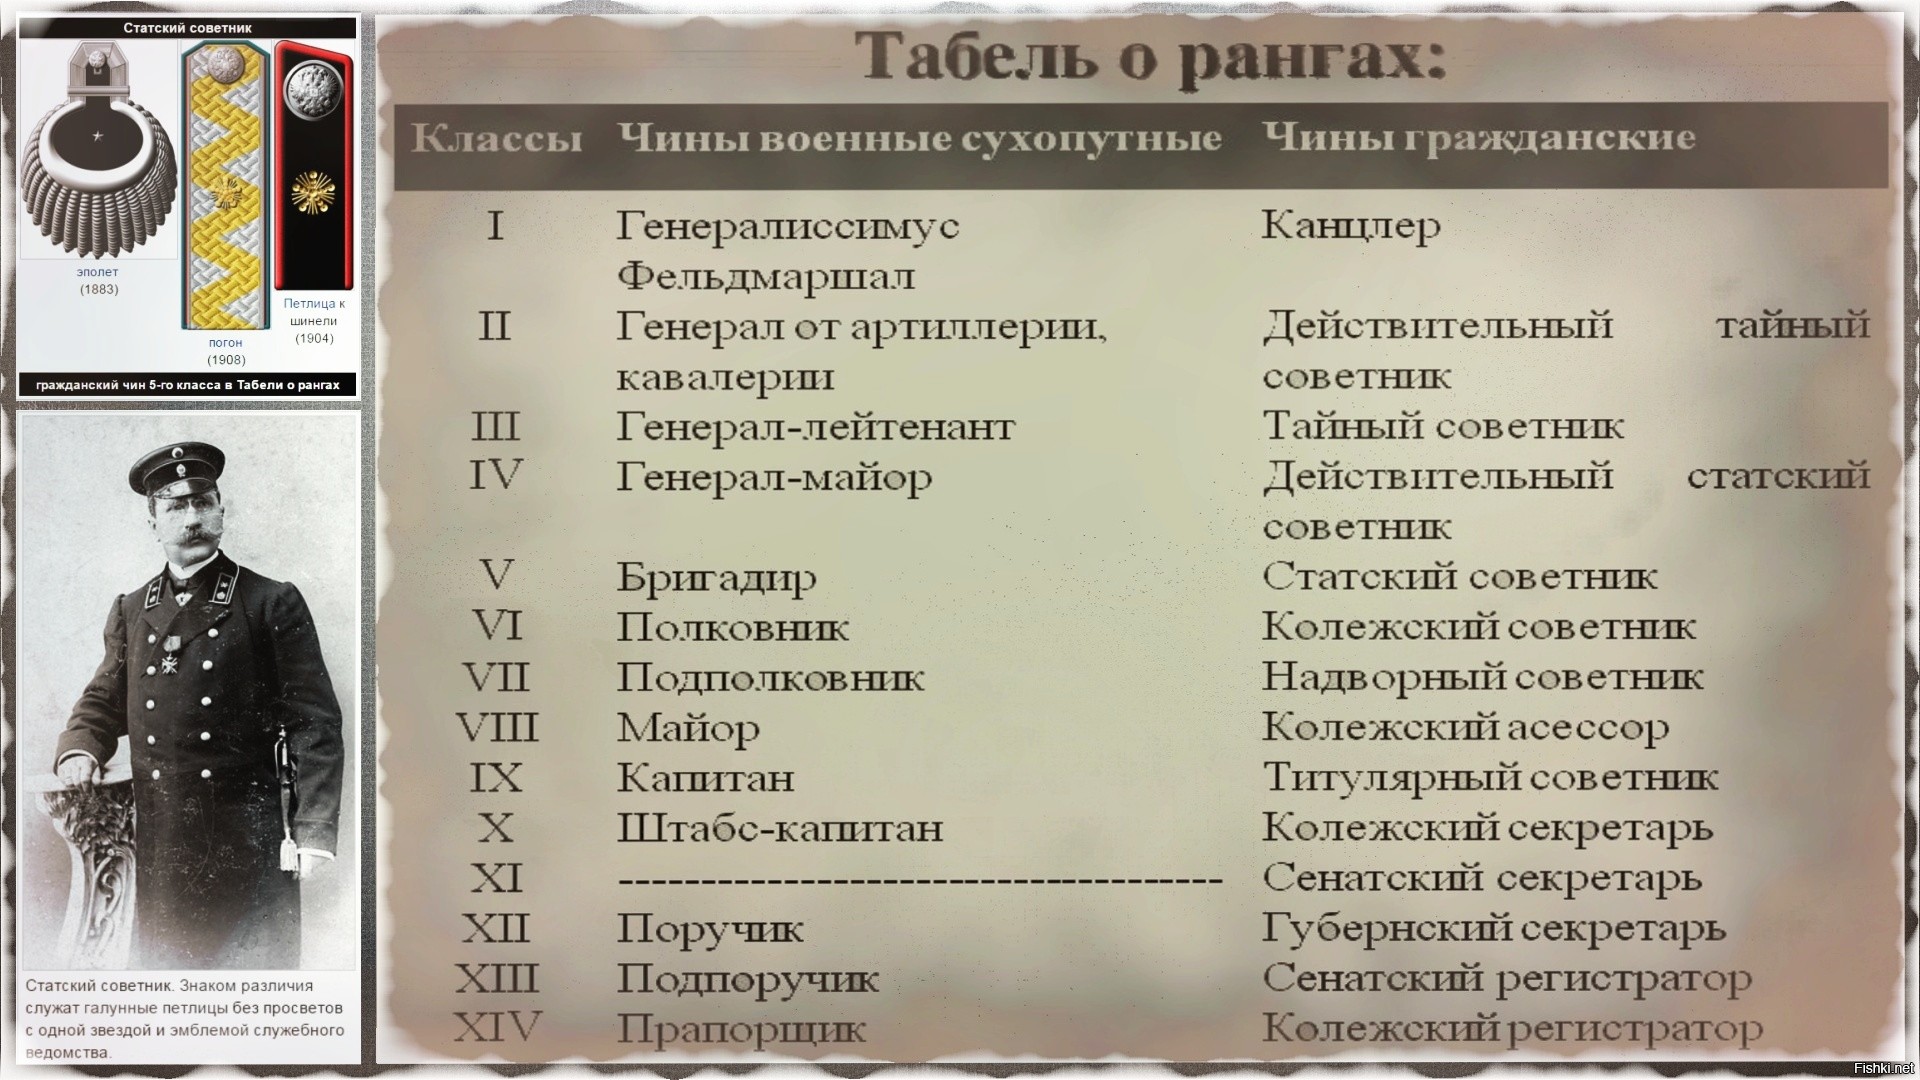 Табель о рангах Российской империи Статский советник